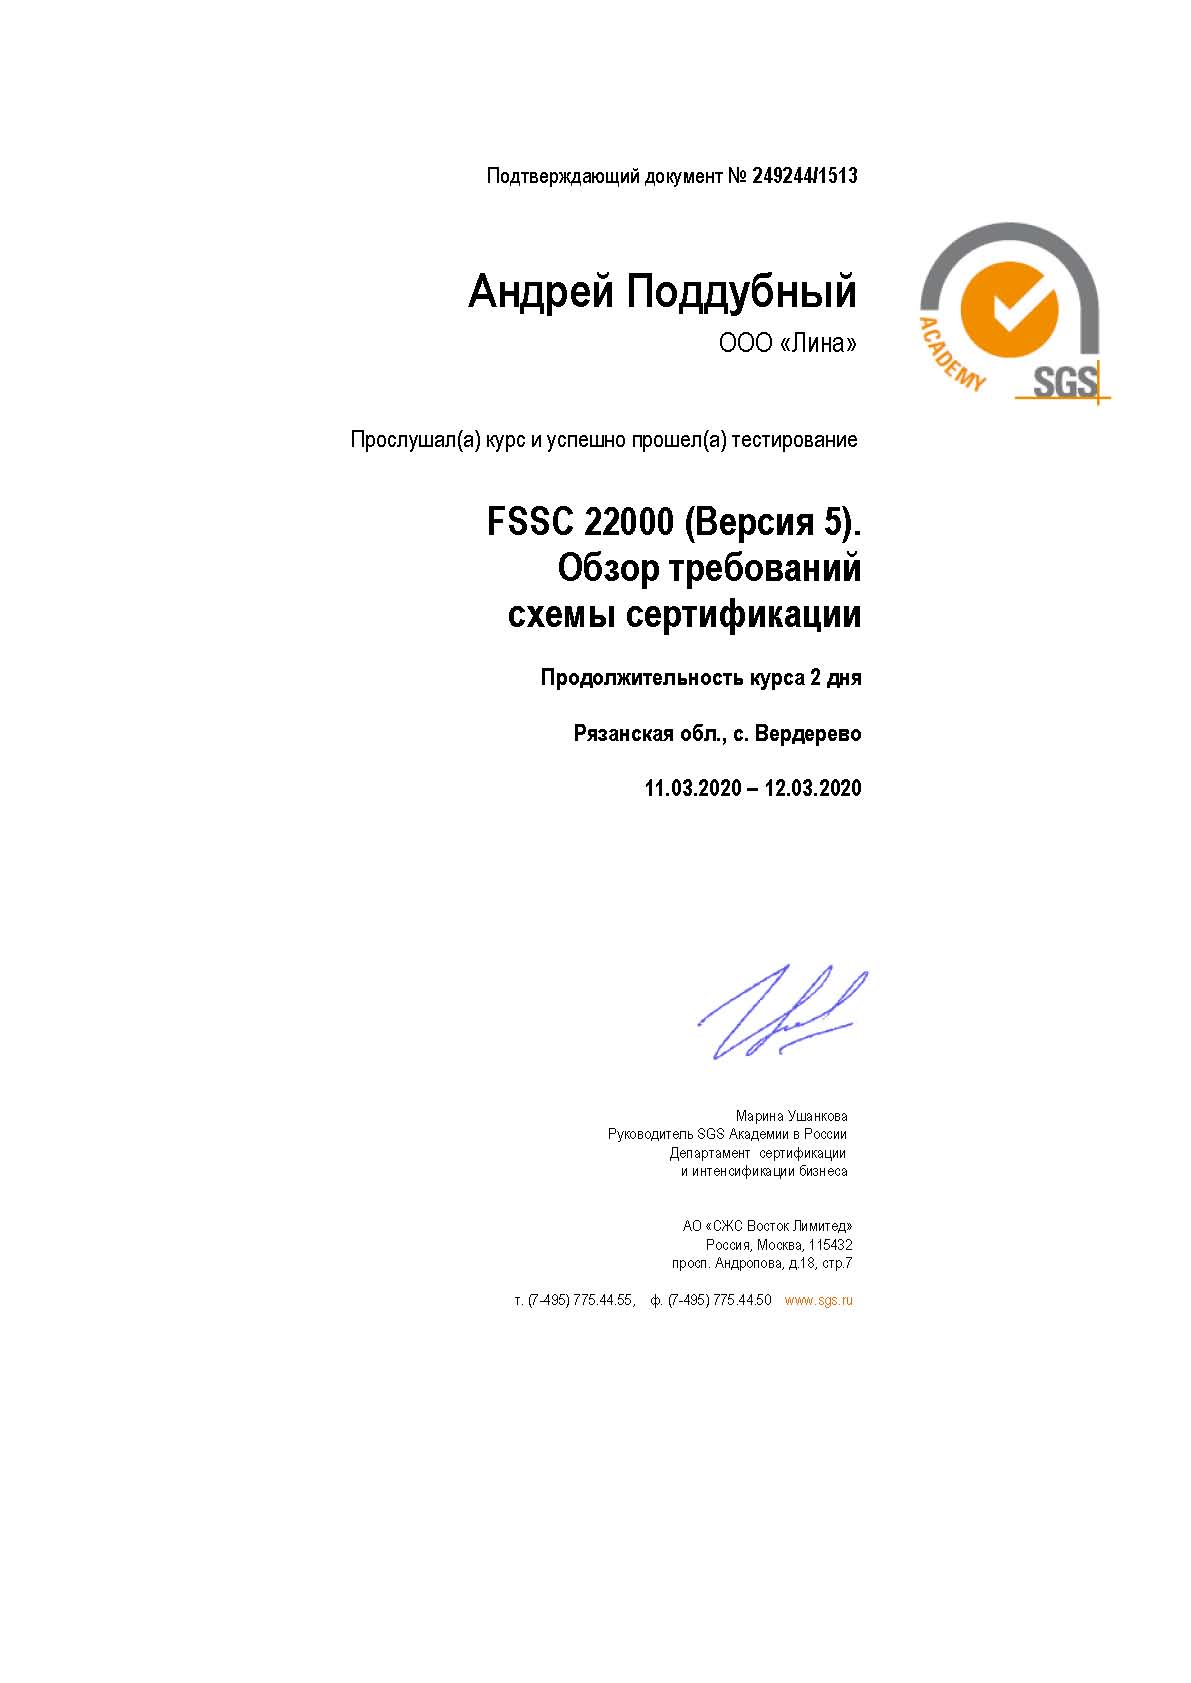 Сертификация FSSC